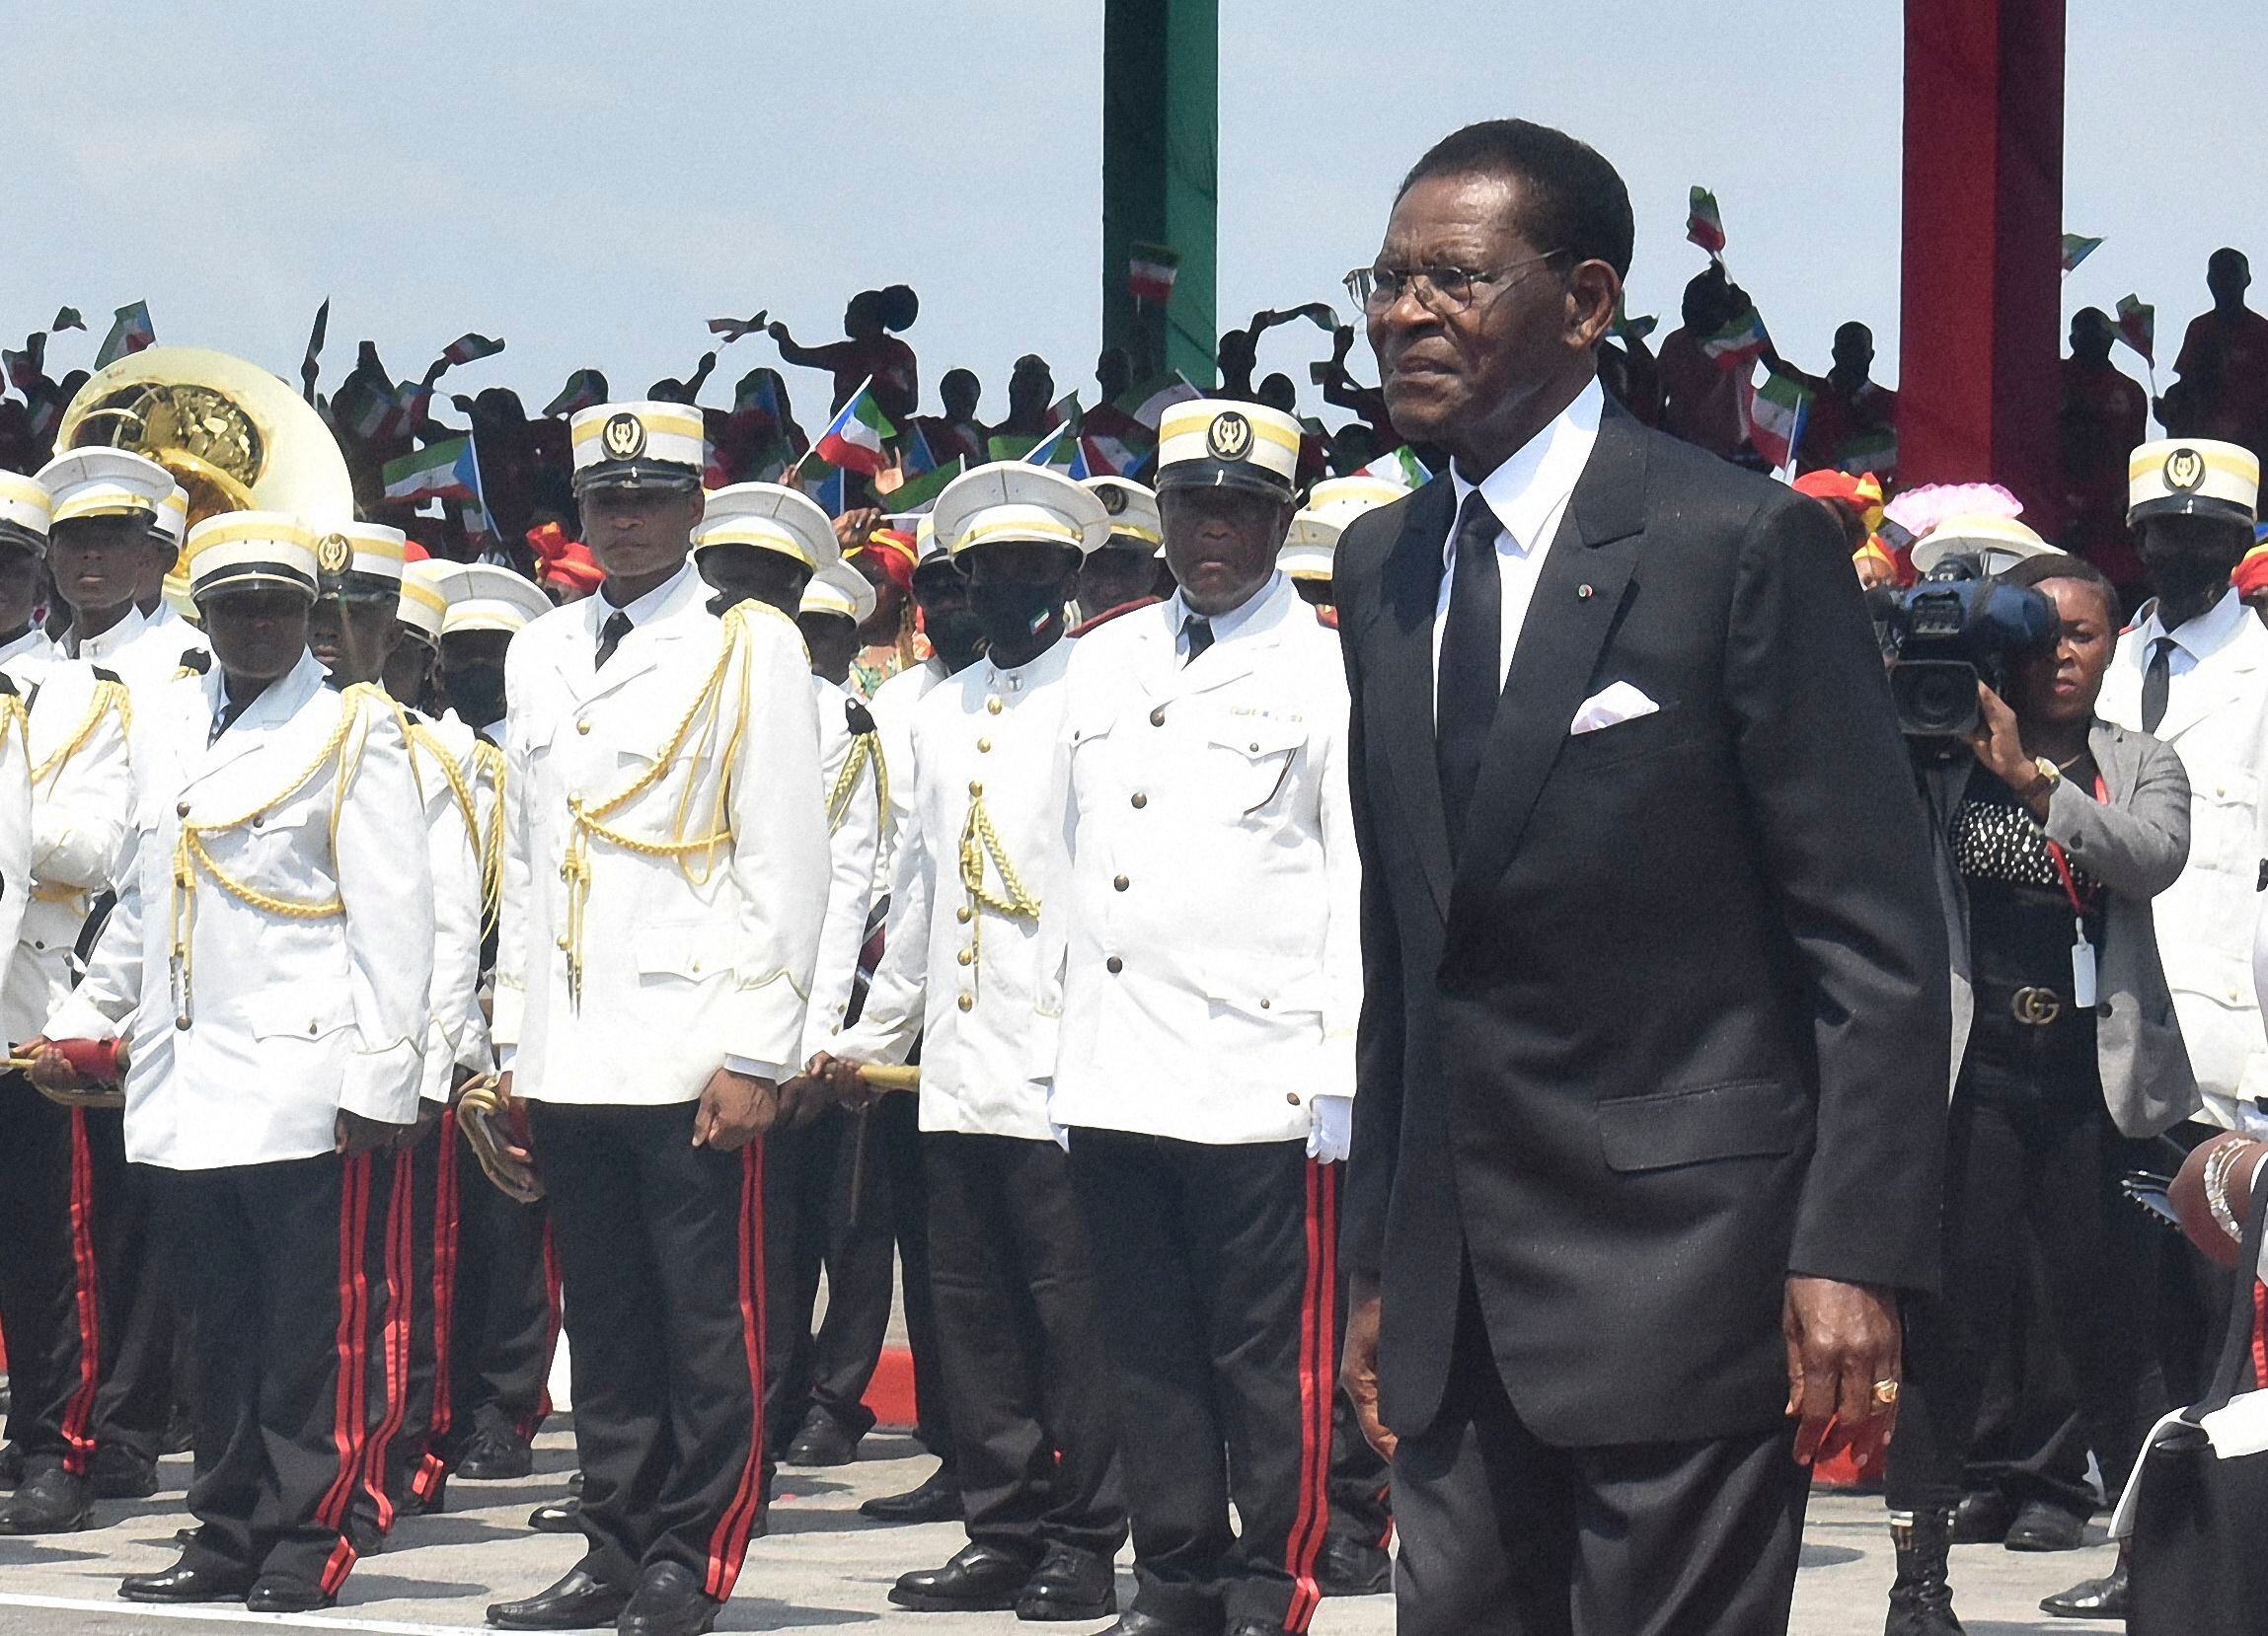 El avión presidencial de Obiang, cárcel volante para trasladar a opositores secuestrados